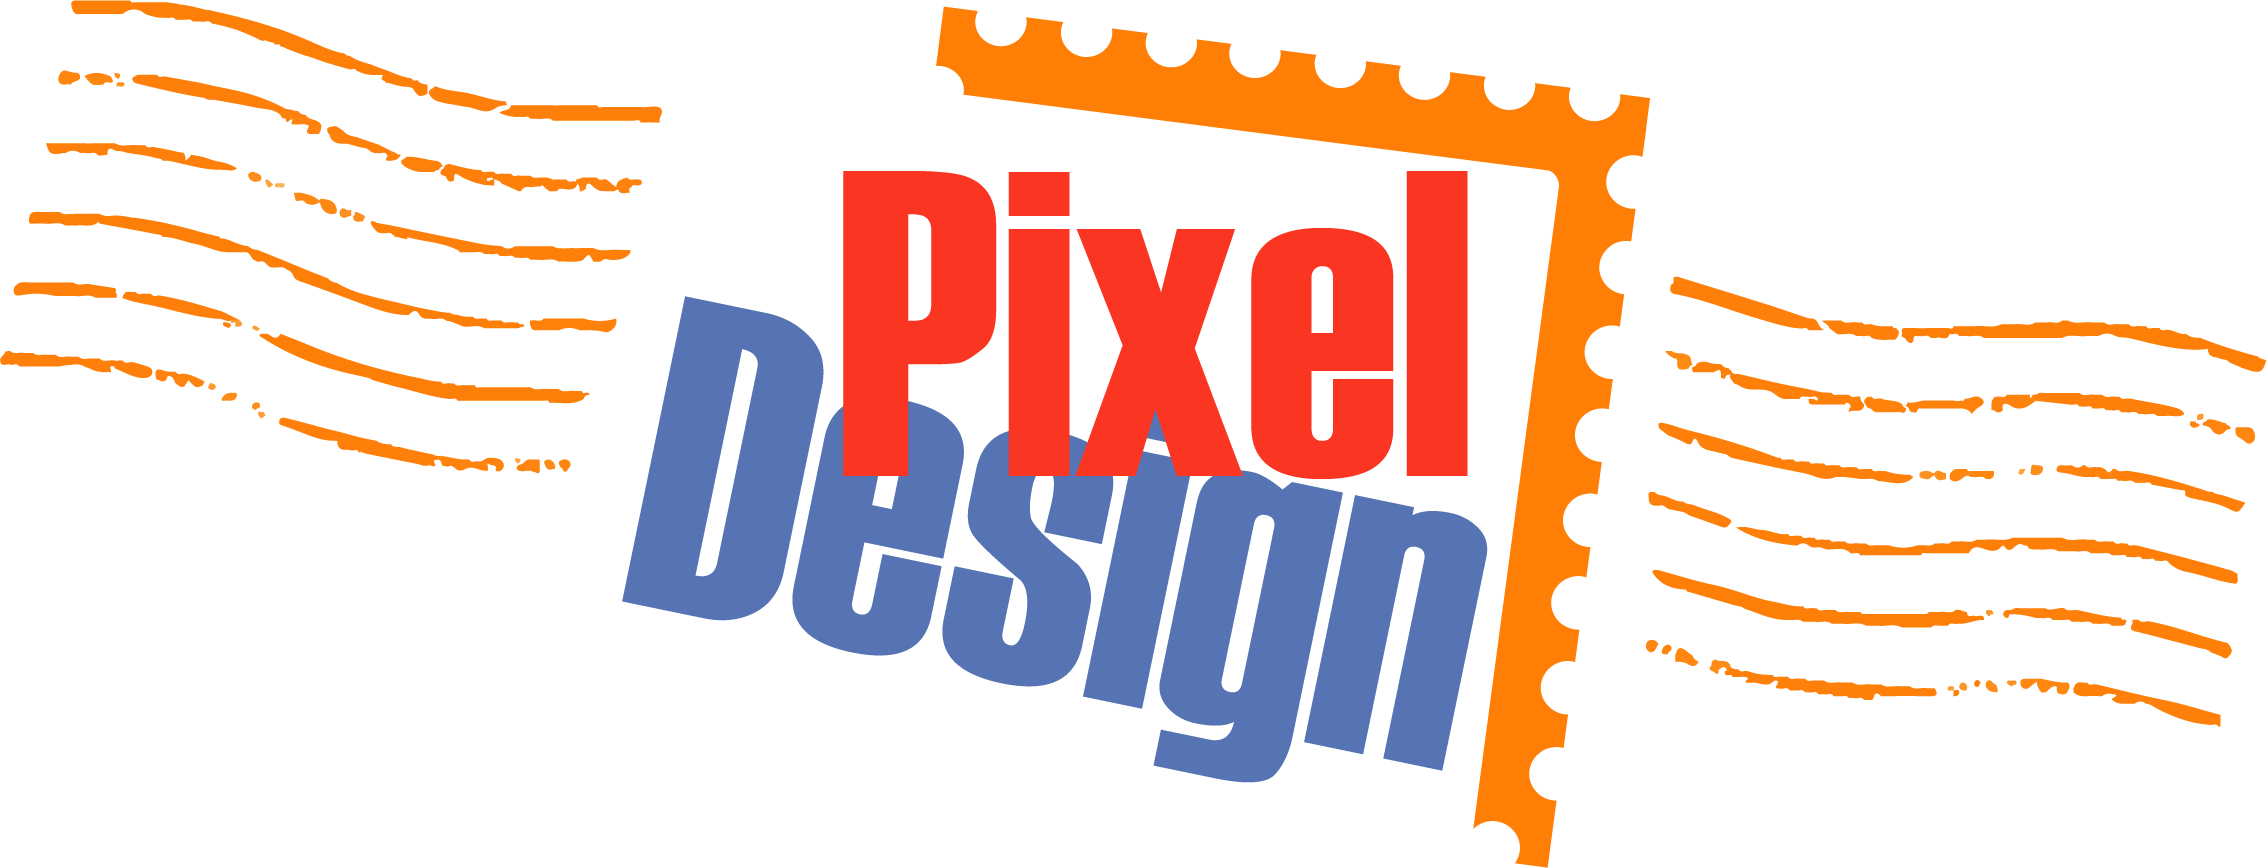 Pixel Design • Montréal Canada | Cartes de souhaits numériques